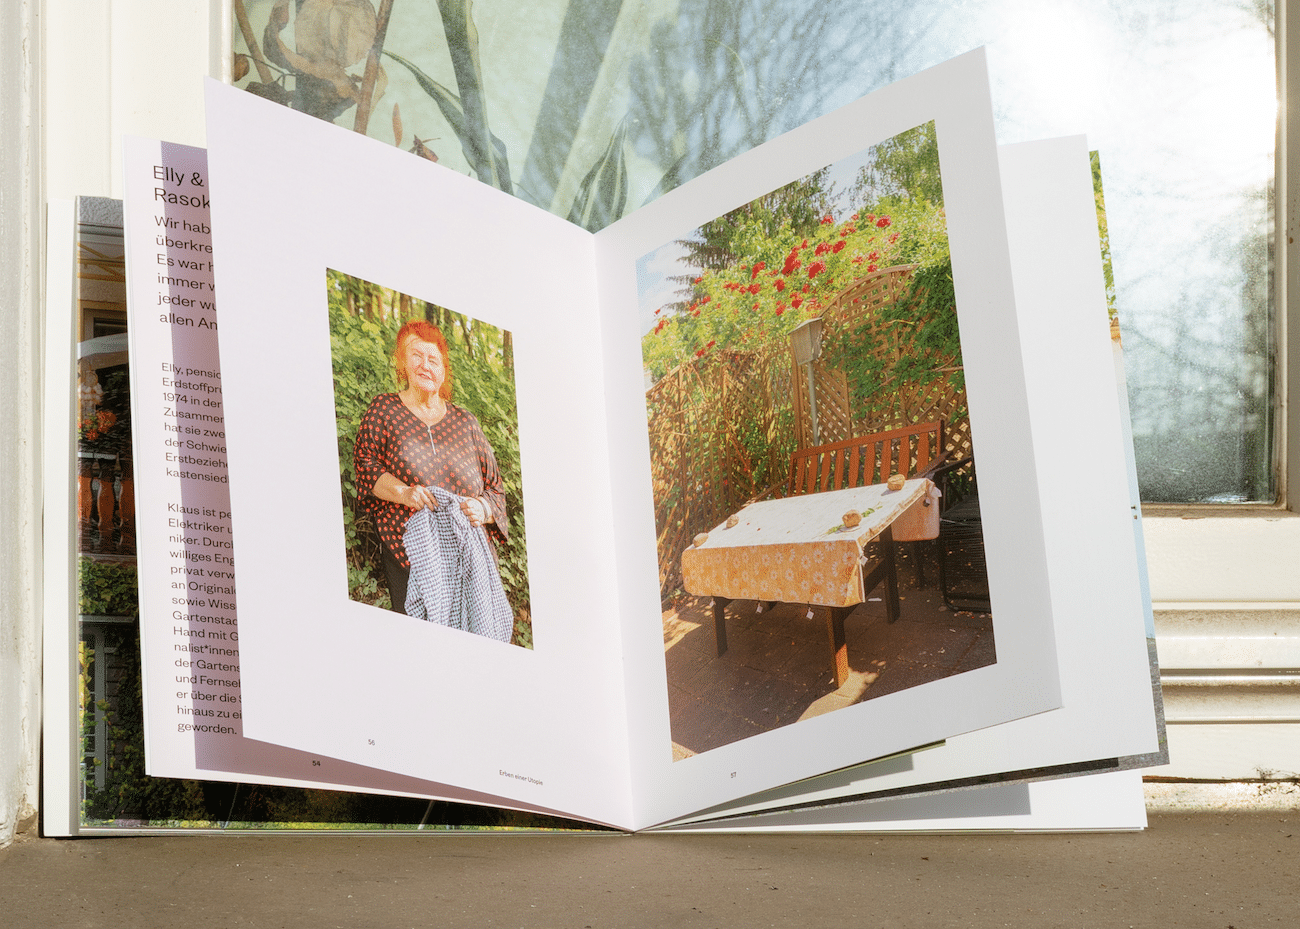 Fotobuch-Doppelseite zur Gartensiedlung in Berlin